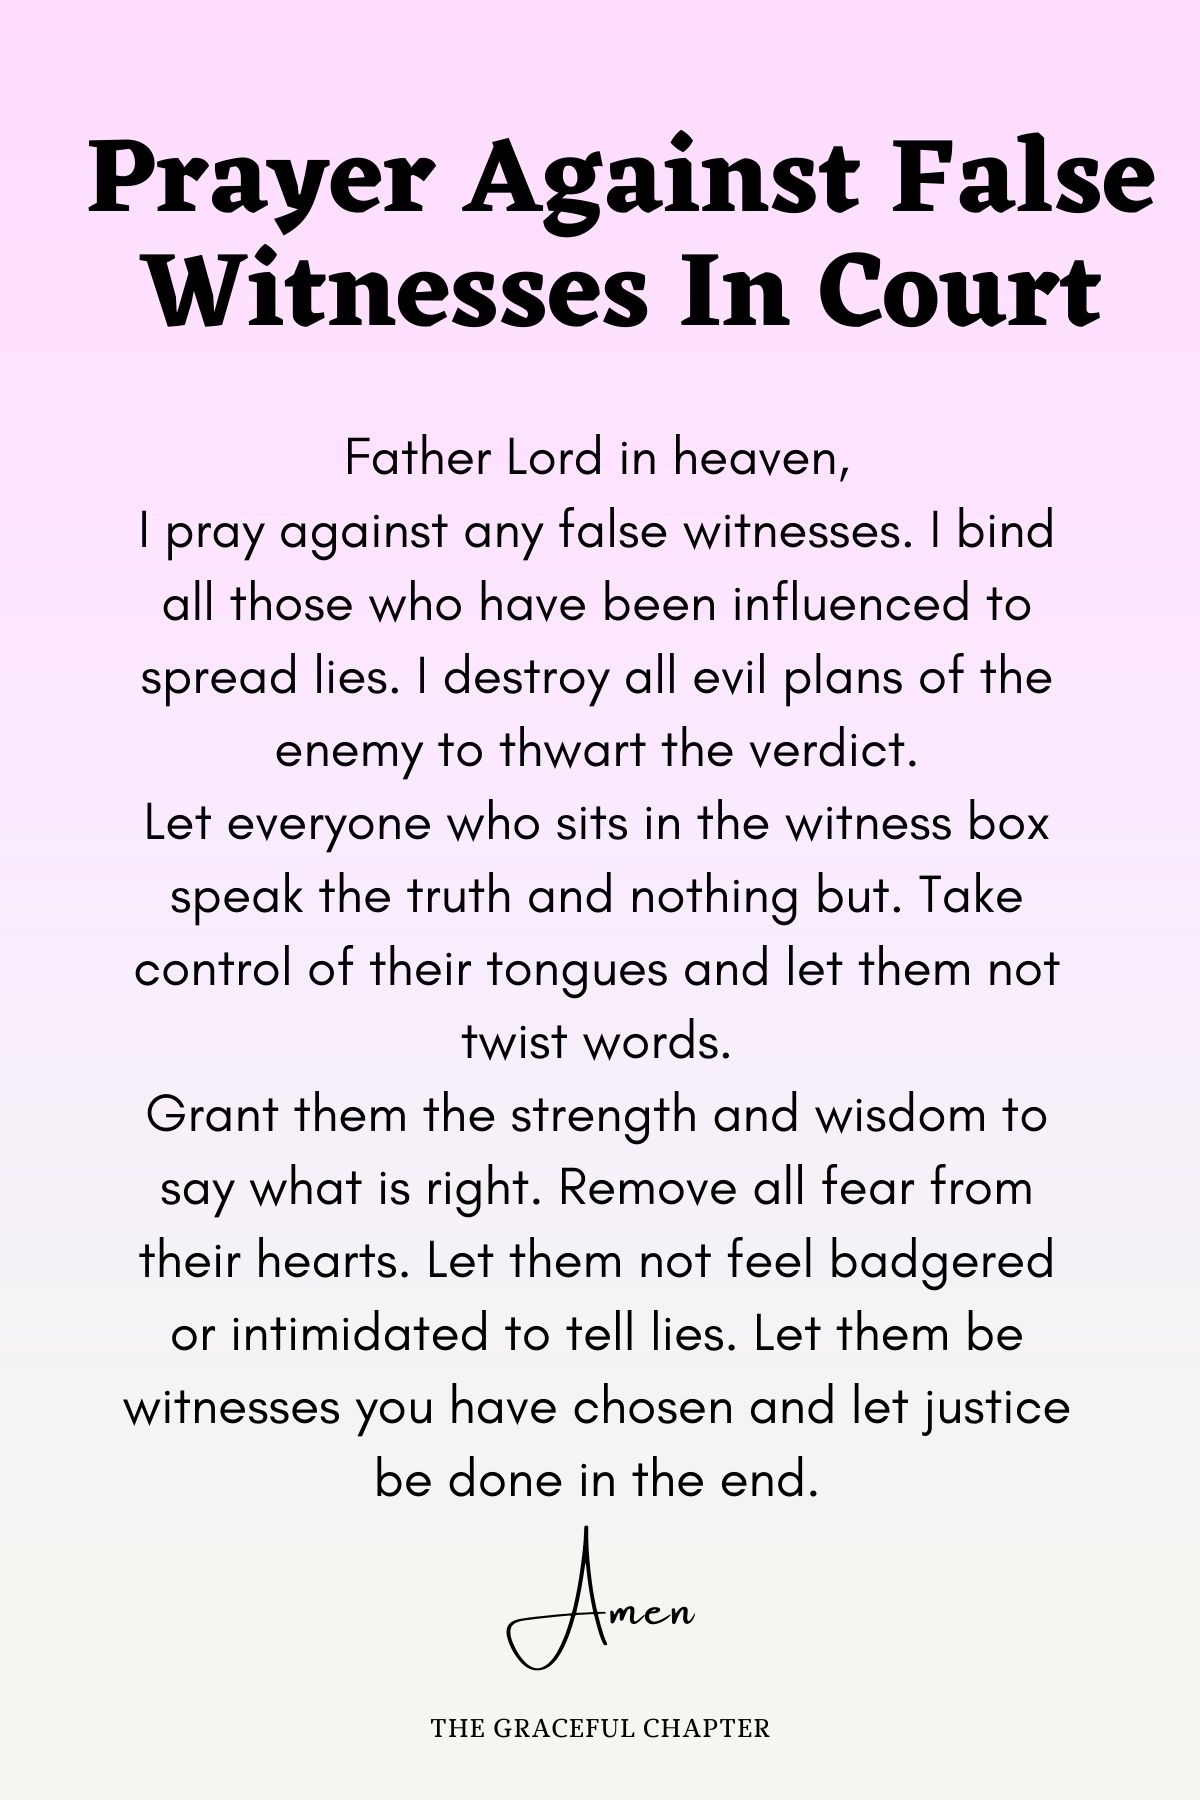 Prayer against false witnesses in court